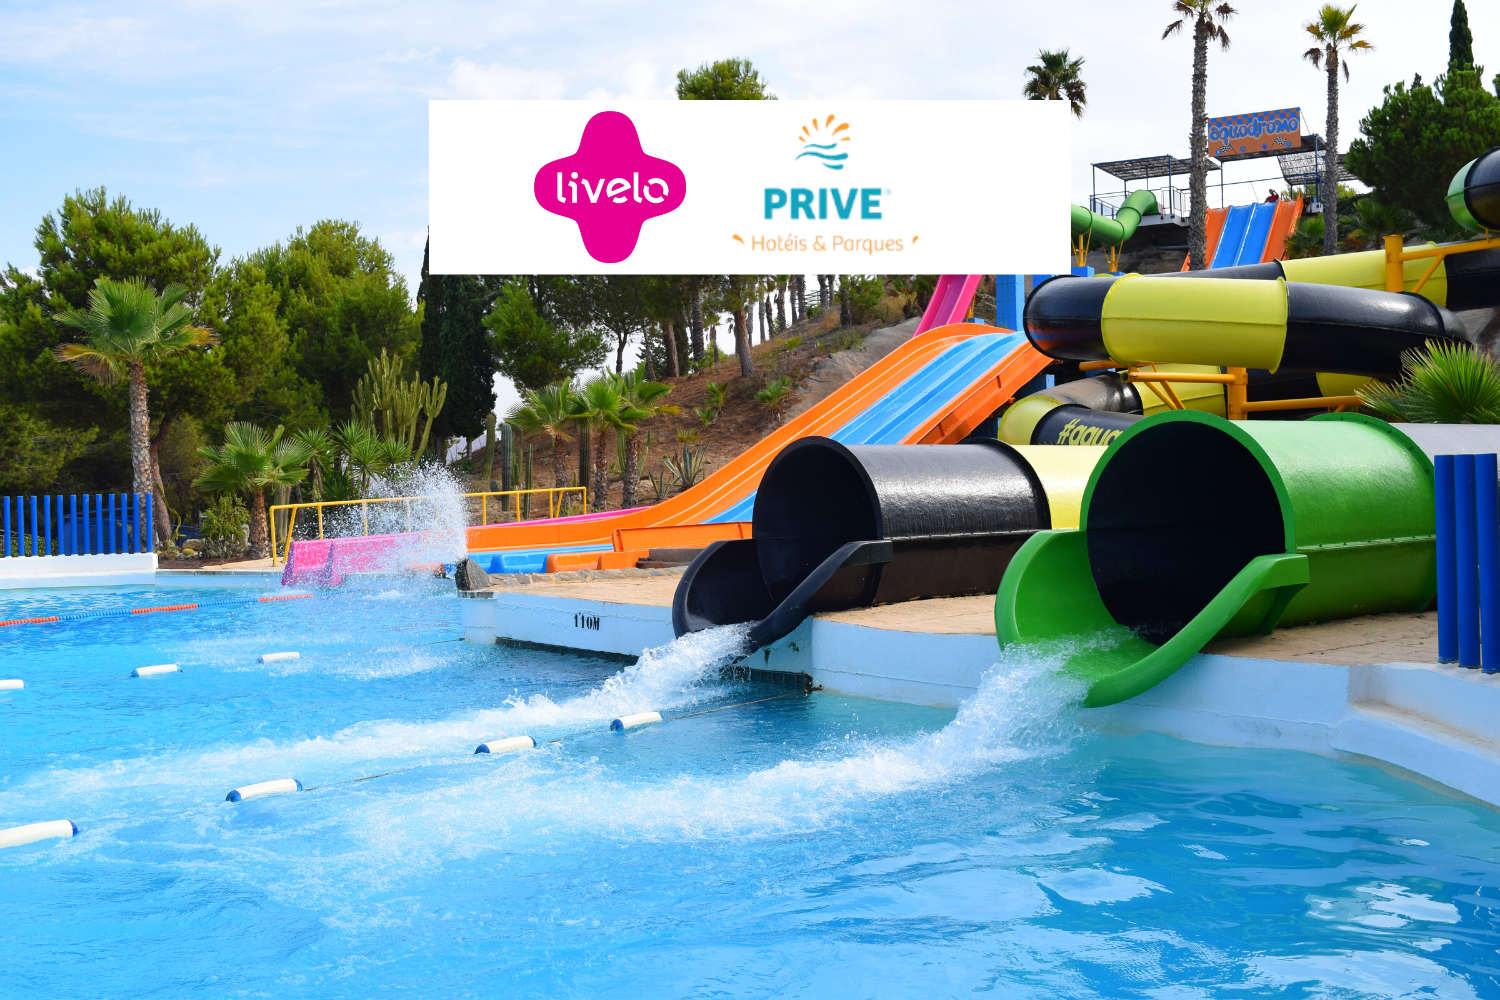 Piscina de um parque aquático com logo Livelo e Privé Hotéis e Parques Até 6 pontos Livelo